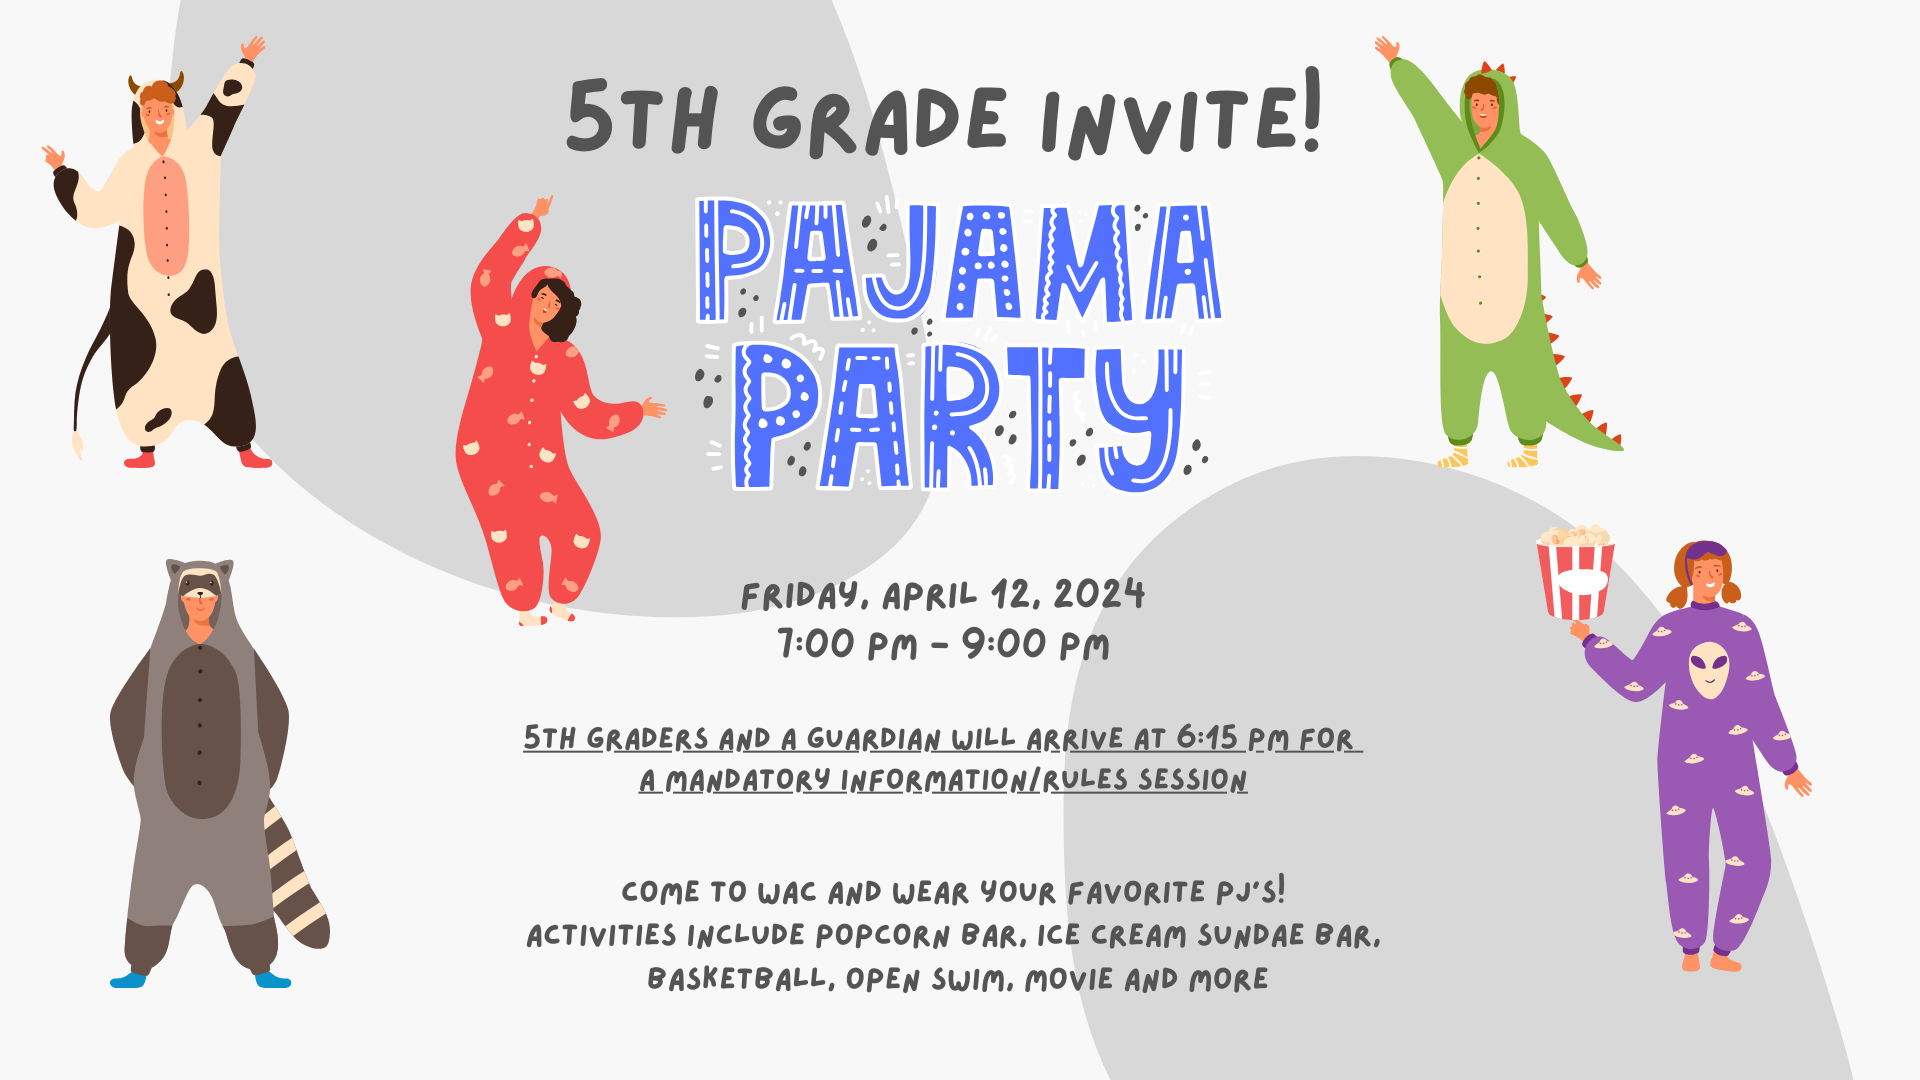 WAC 5th Grade Invite